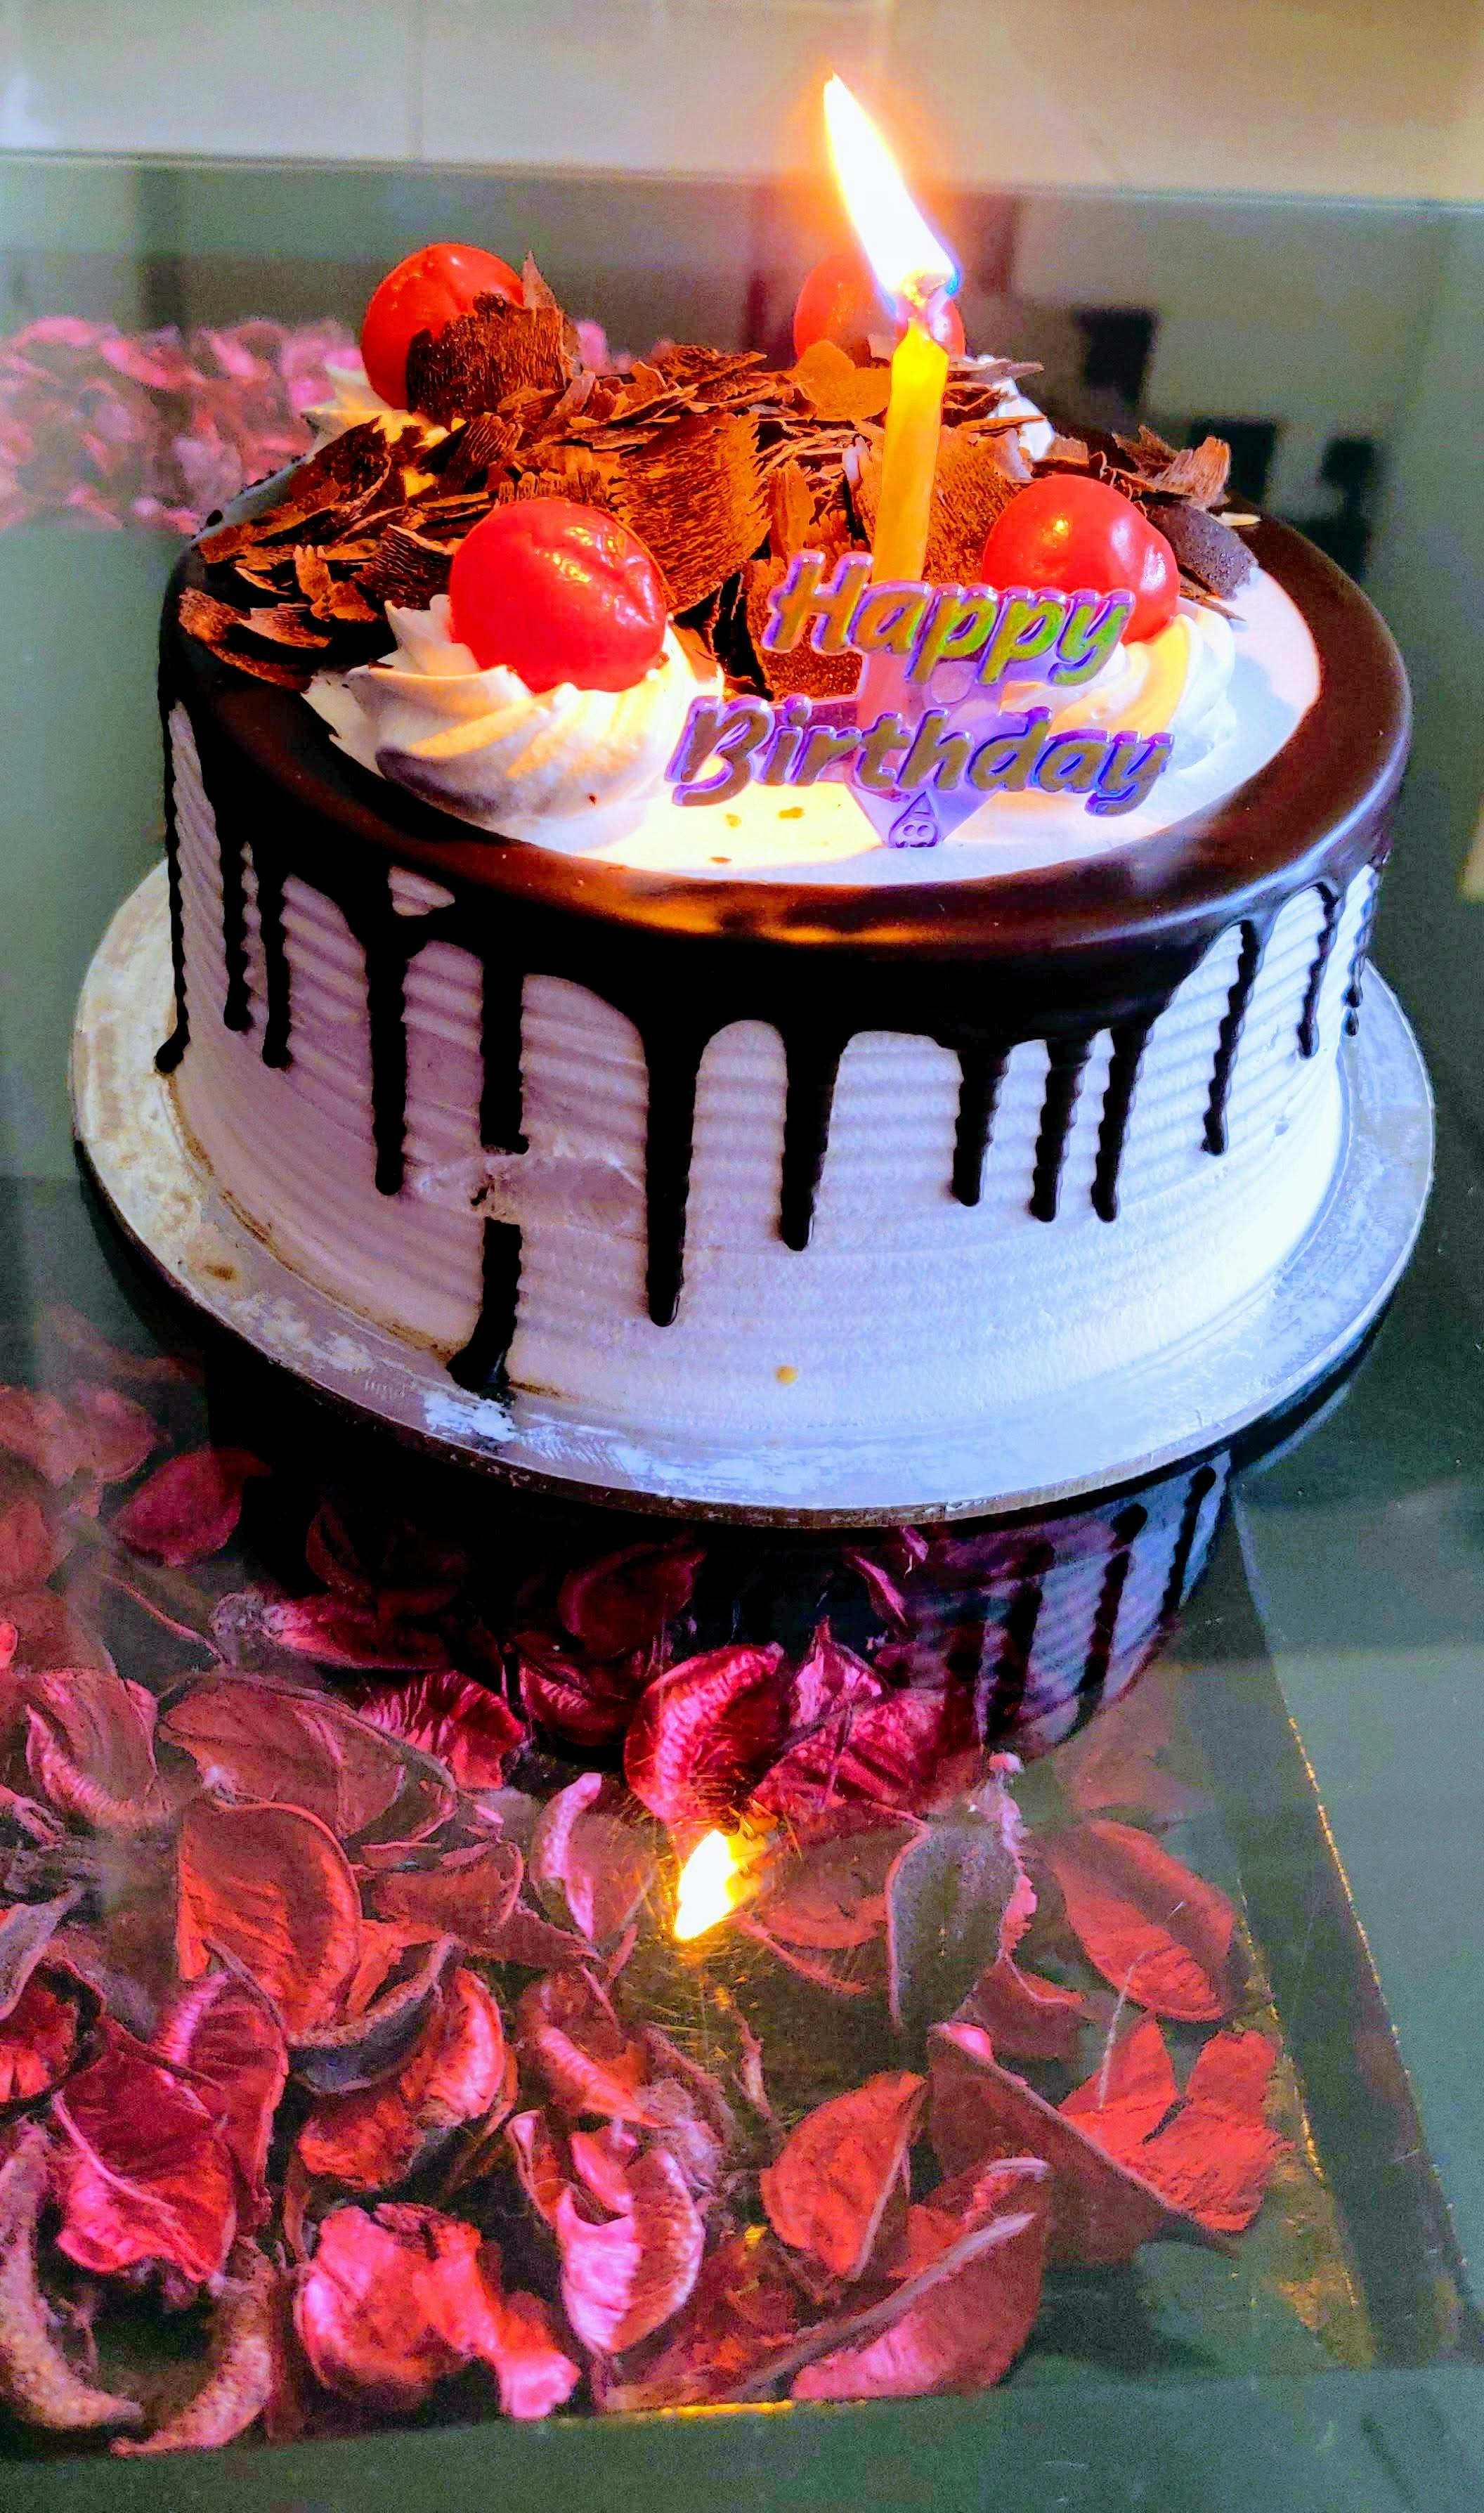 Free stock photo of birthday, birthday cake, birthday gift